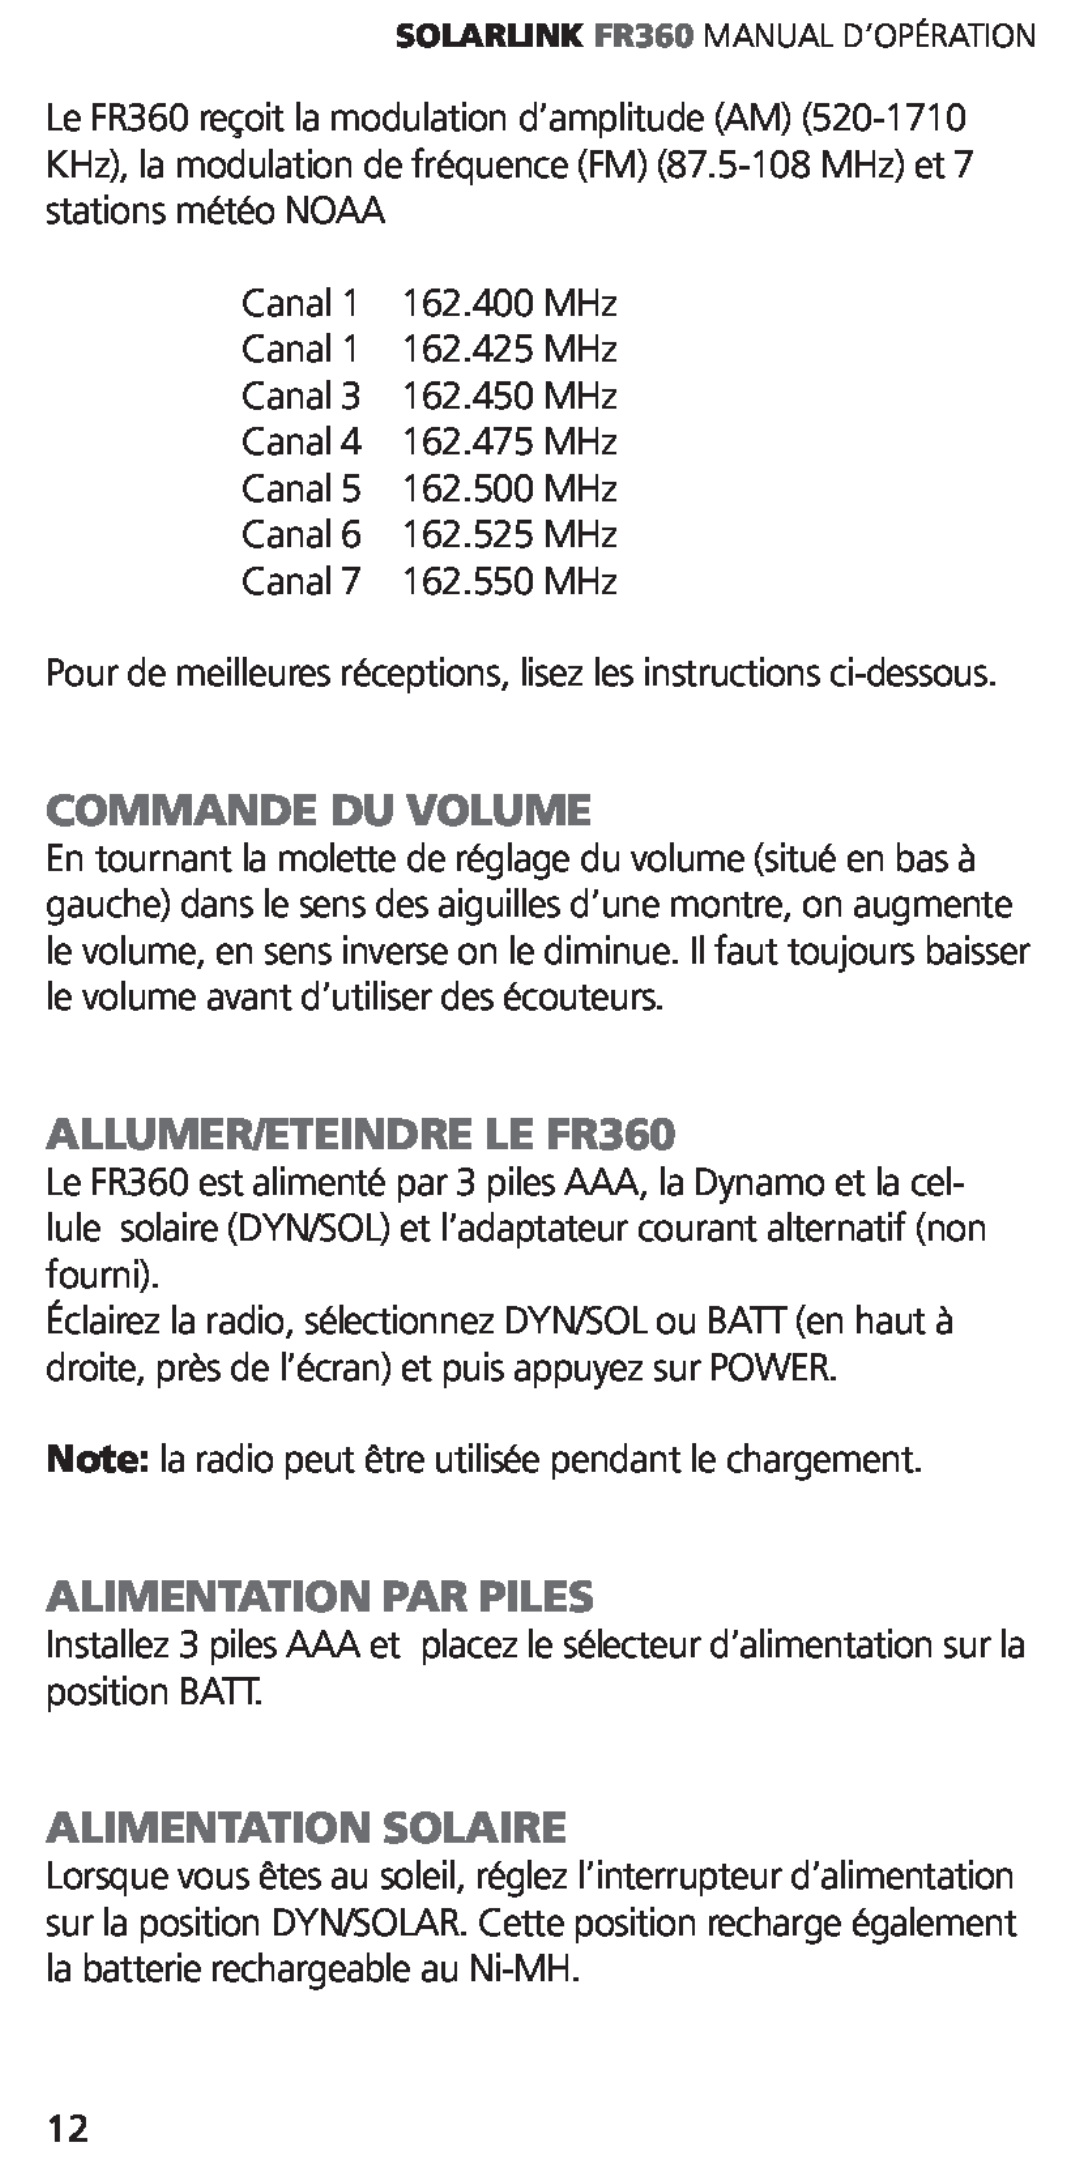 Eton ARCFR360WXW WHT Commande Du Volume, ALLUMER/ETEINDRE LE FR360, Alimentation Par Piles, Alimentation Solaire 